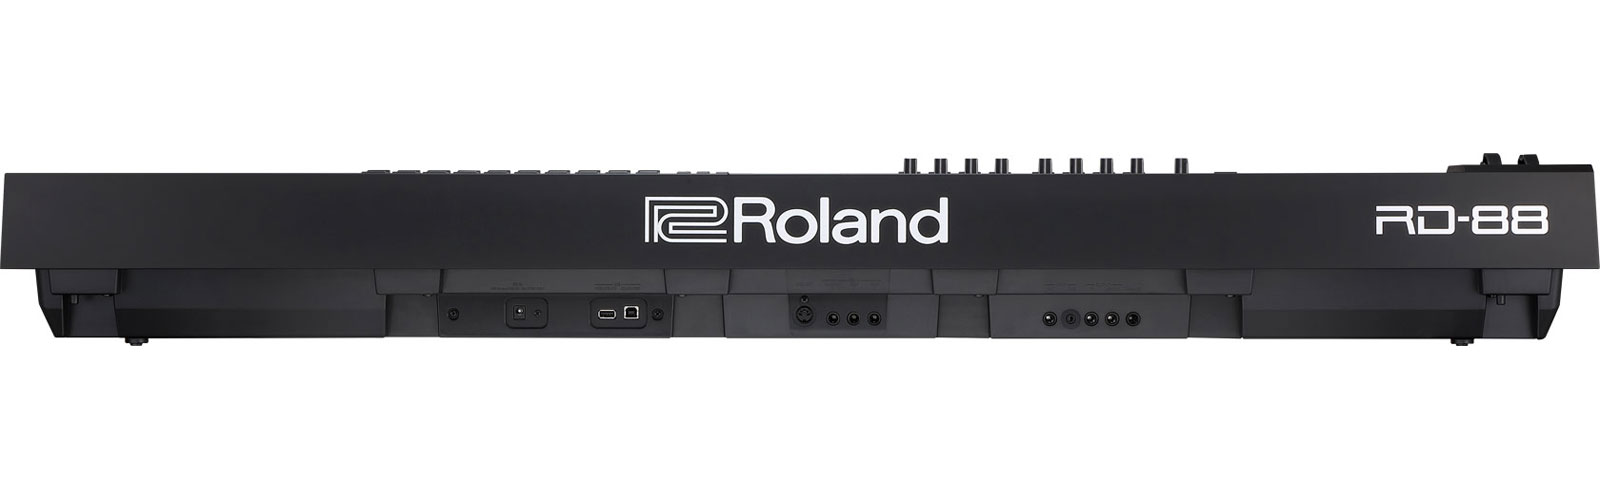 Roland Rd-88 - Teclado de escenario - Variation 5